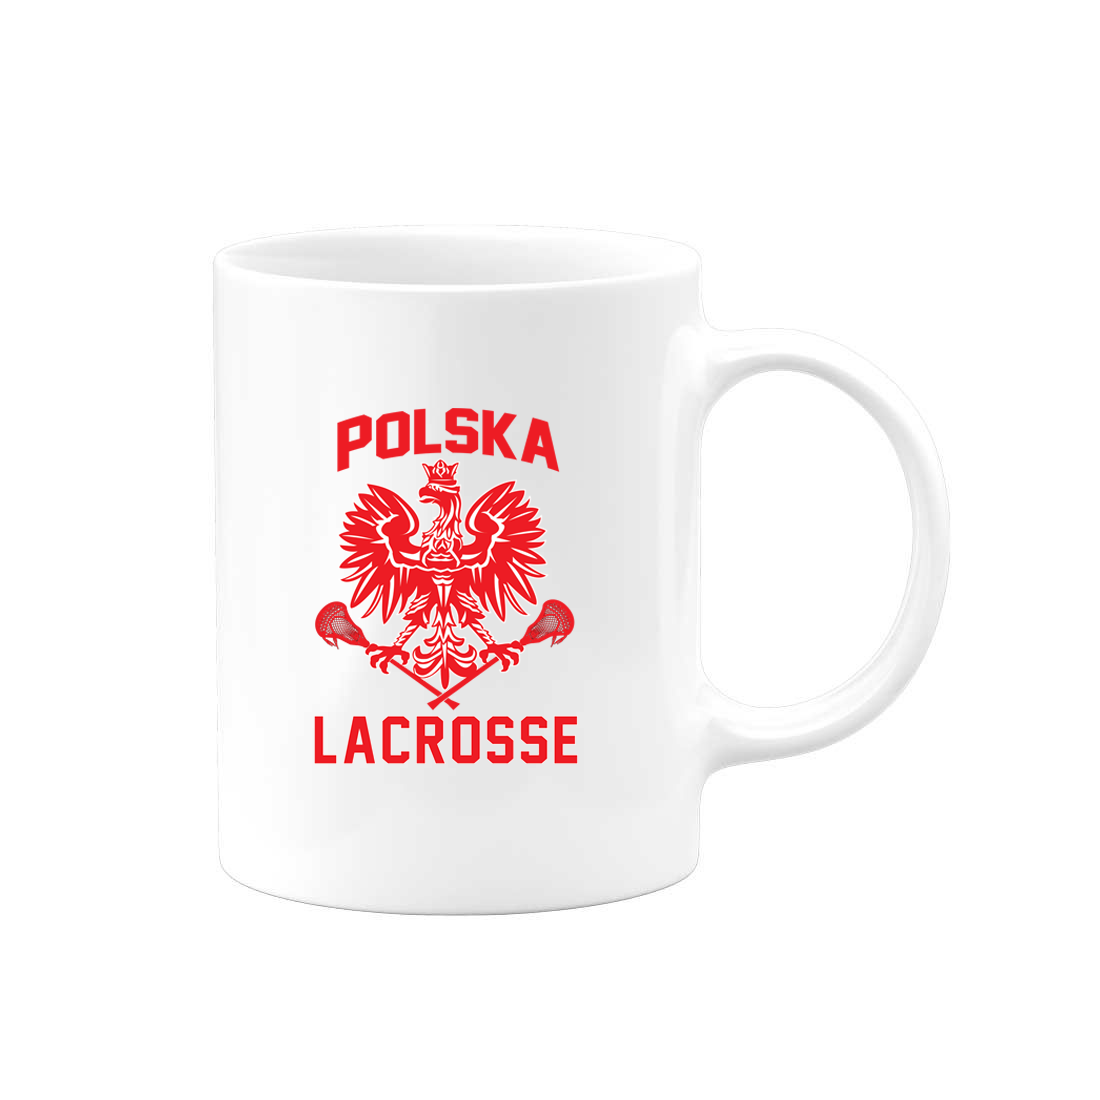 Polska Lacrosse Team Mug